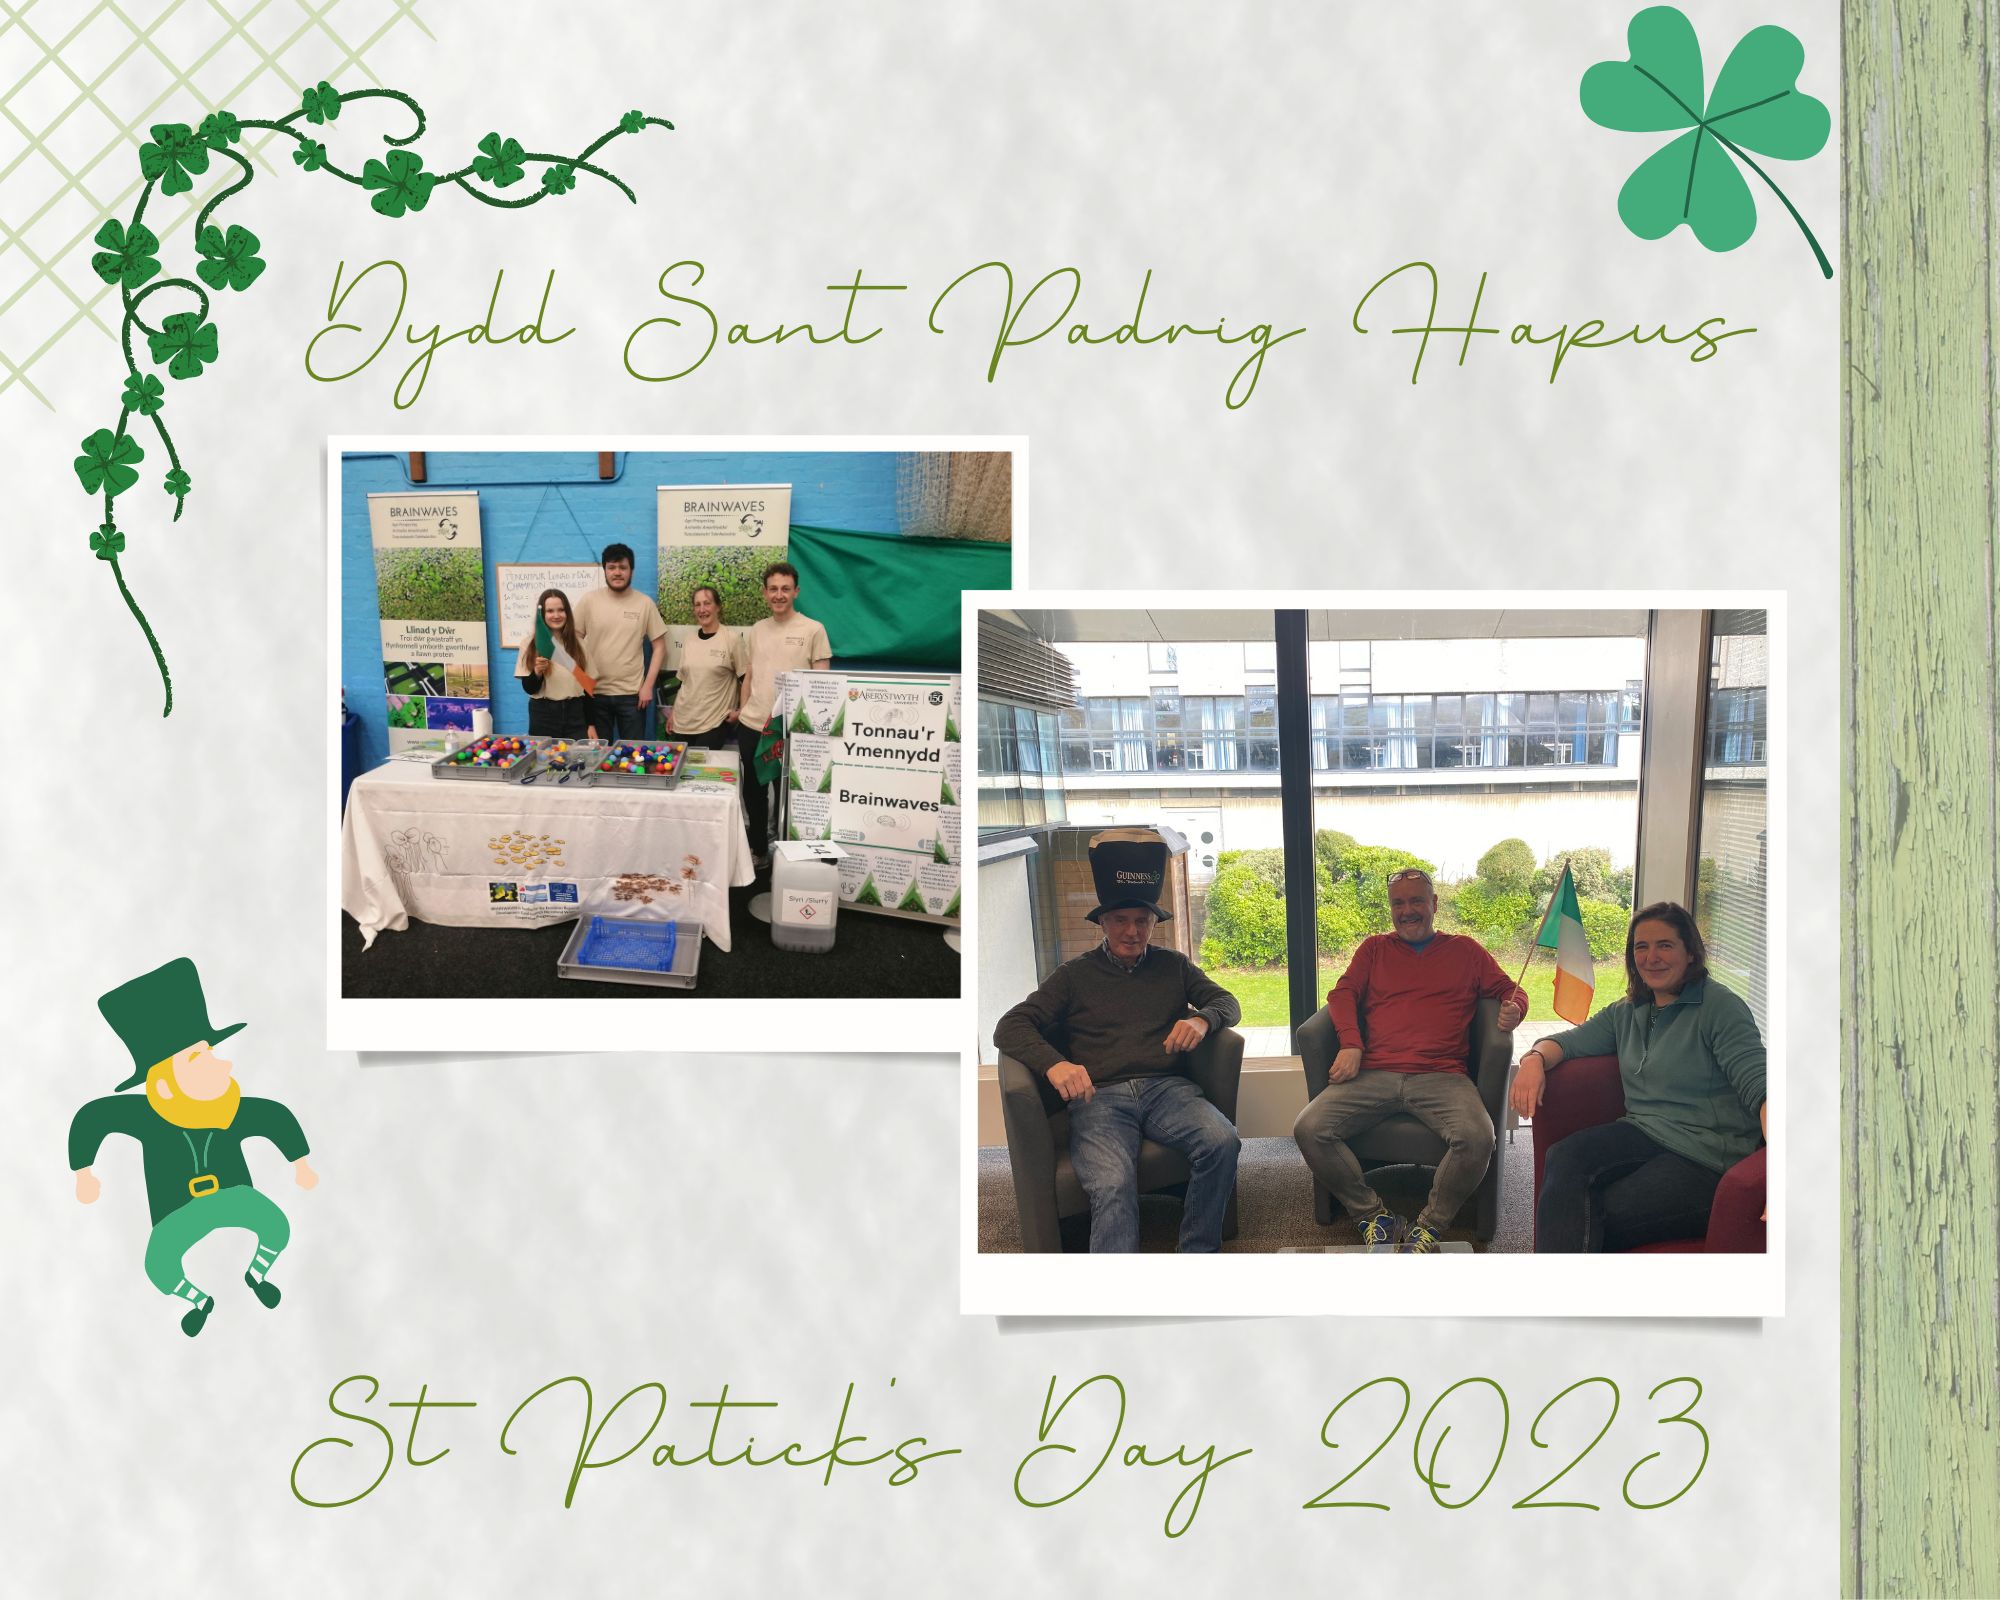 Brainwaves Team in Aberystwyth University celebrating St Patrick's Day 2023